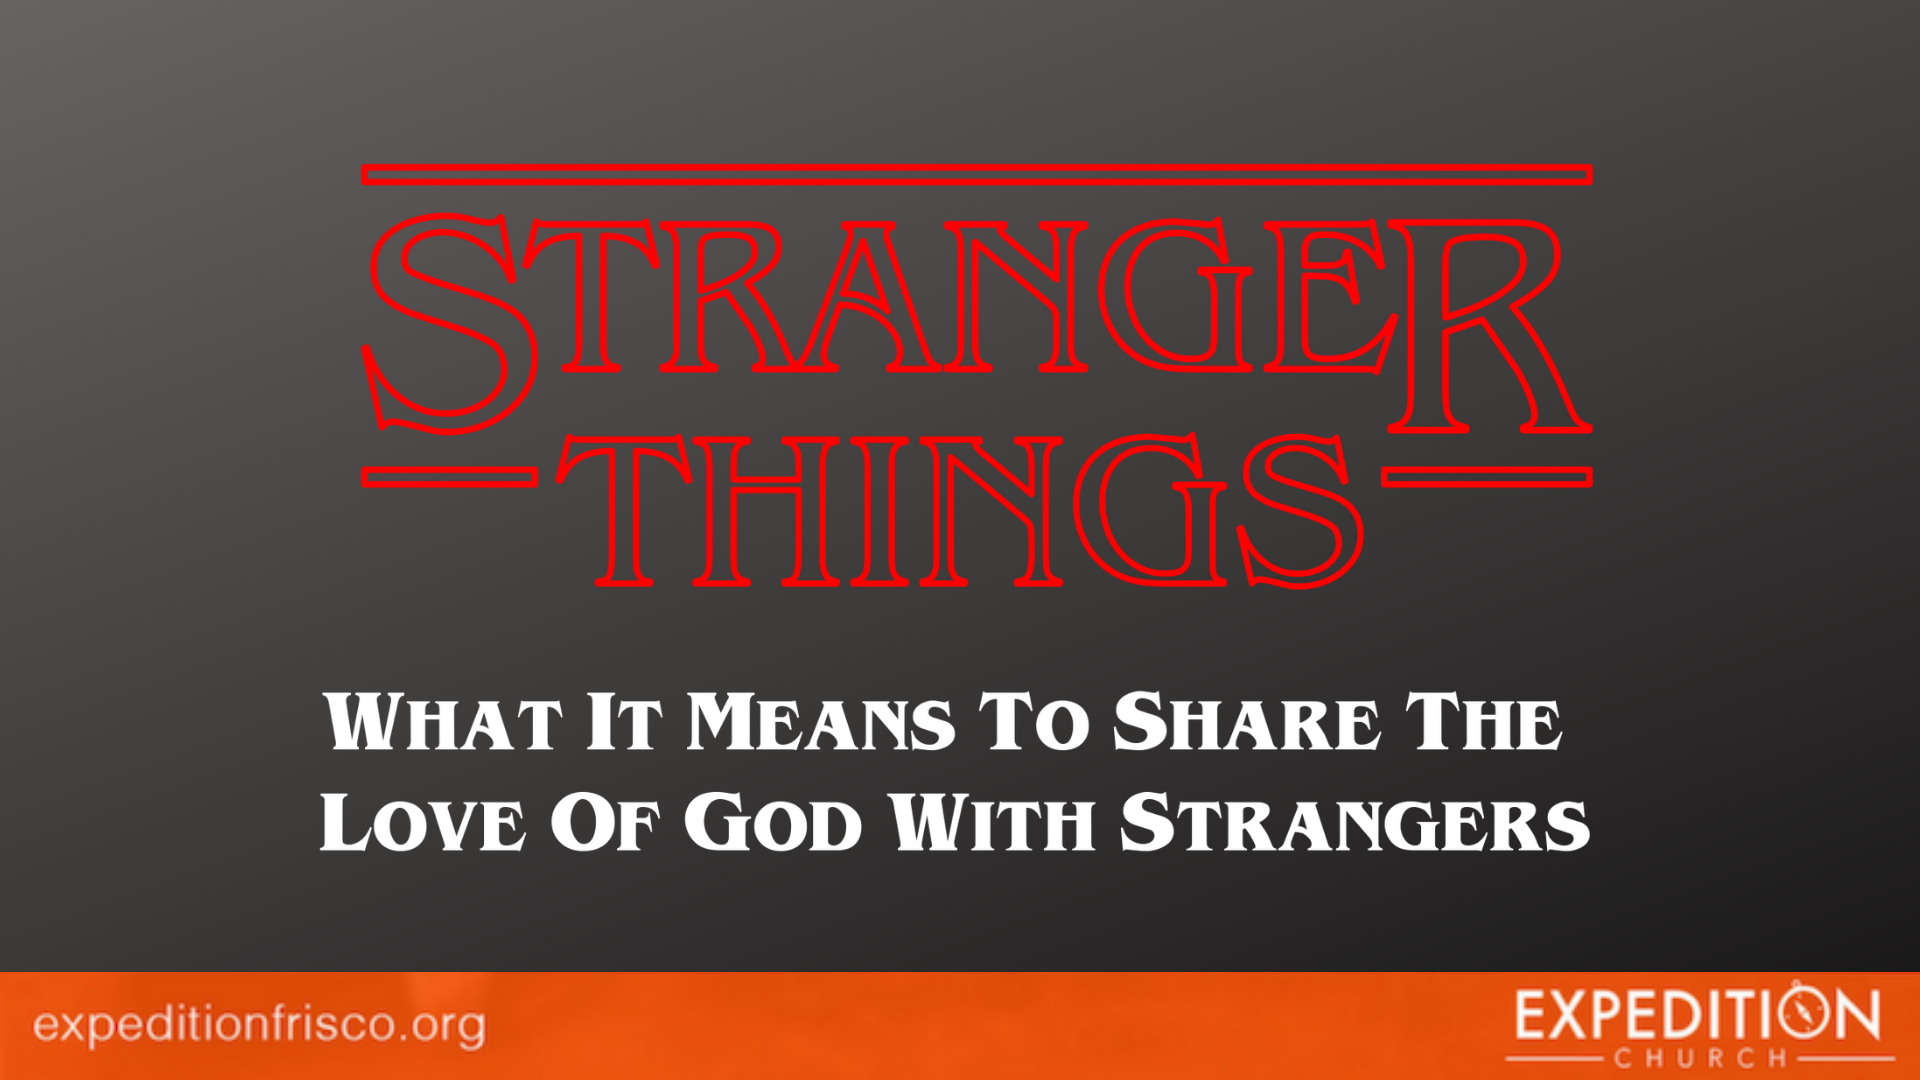 Stranger Things